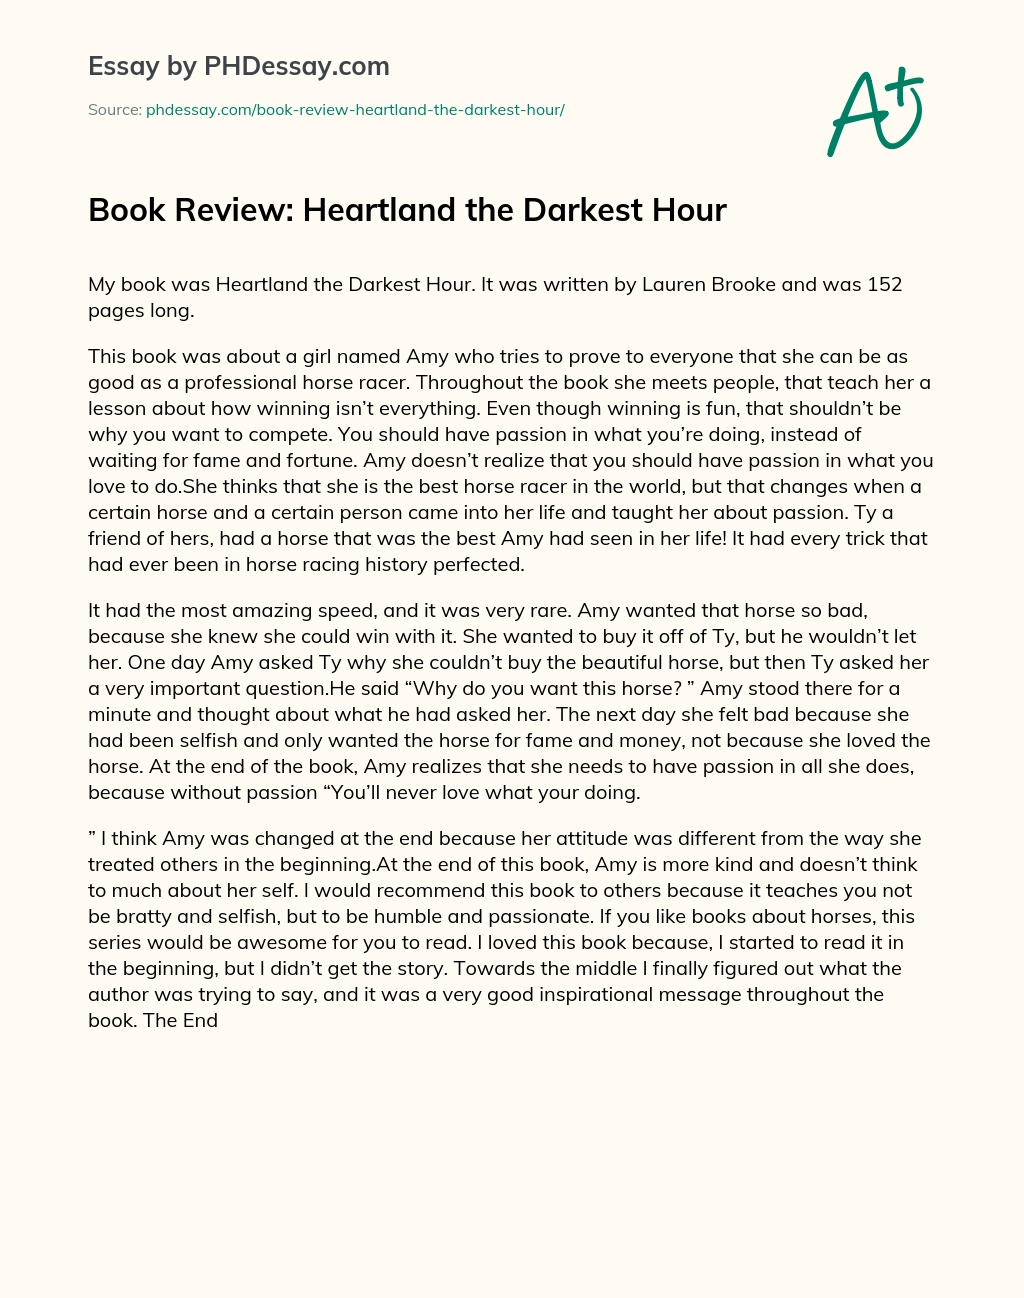 Book Review: Heartland the Darkest Hour essay